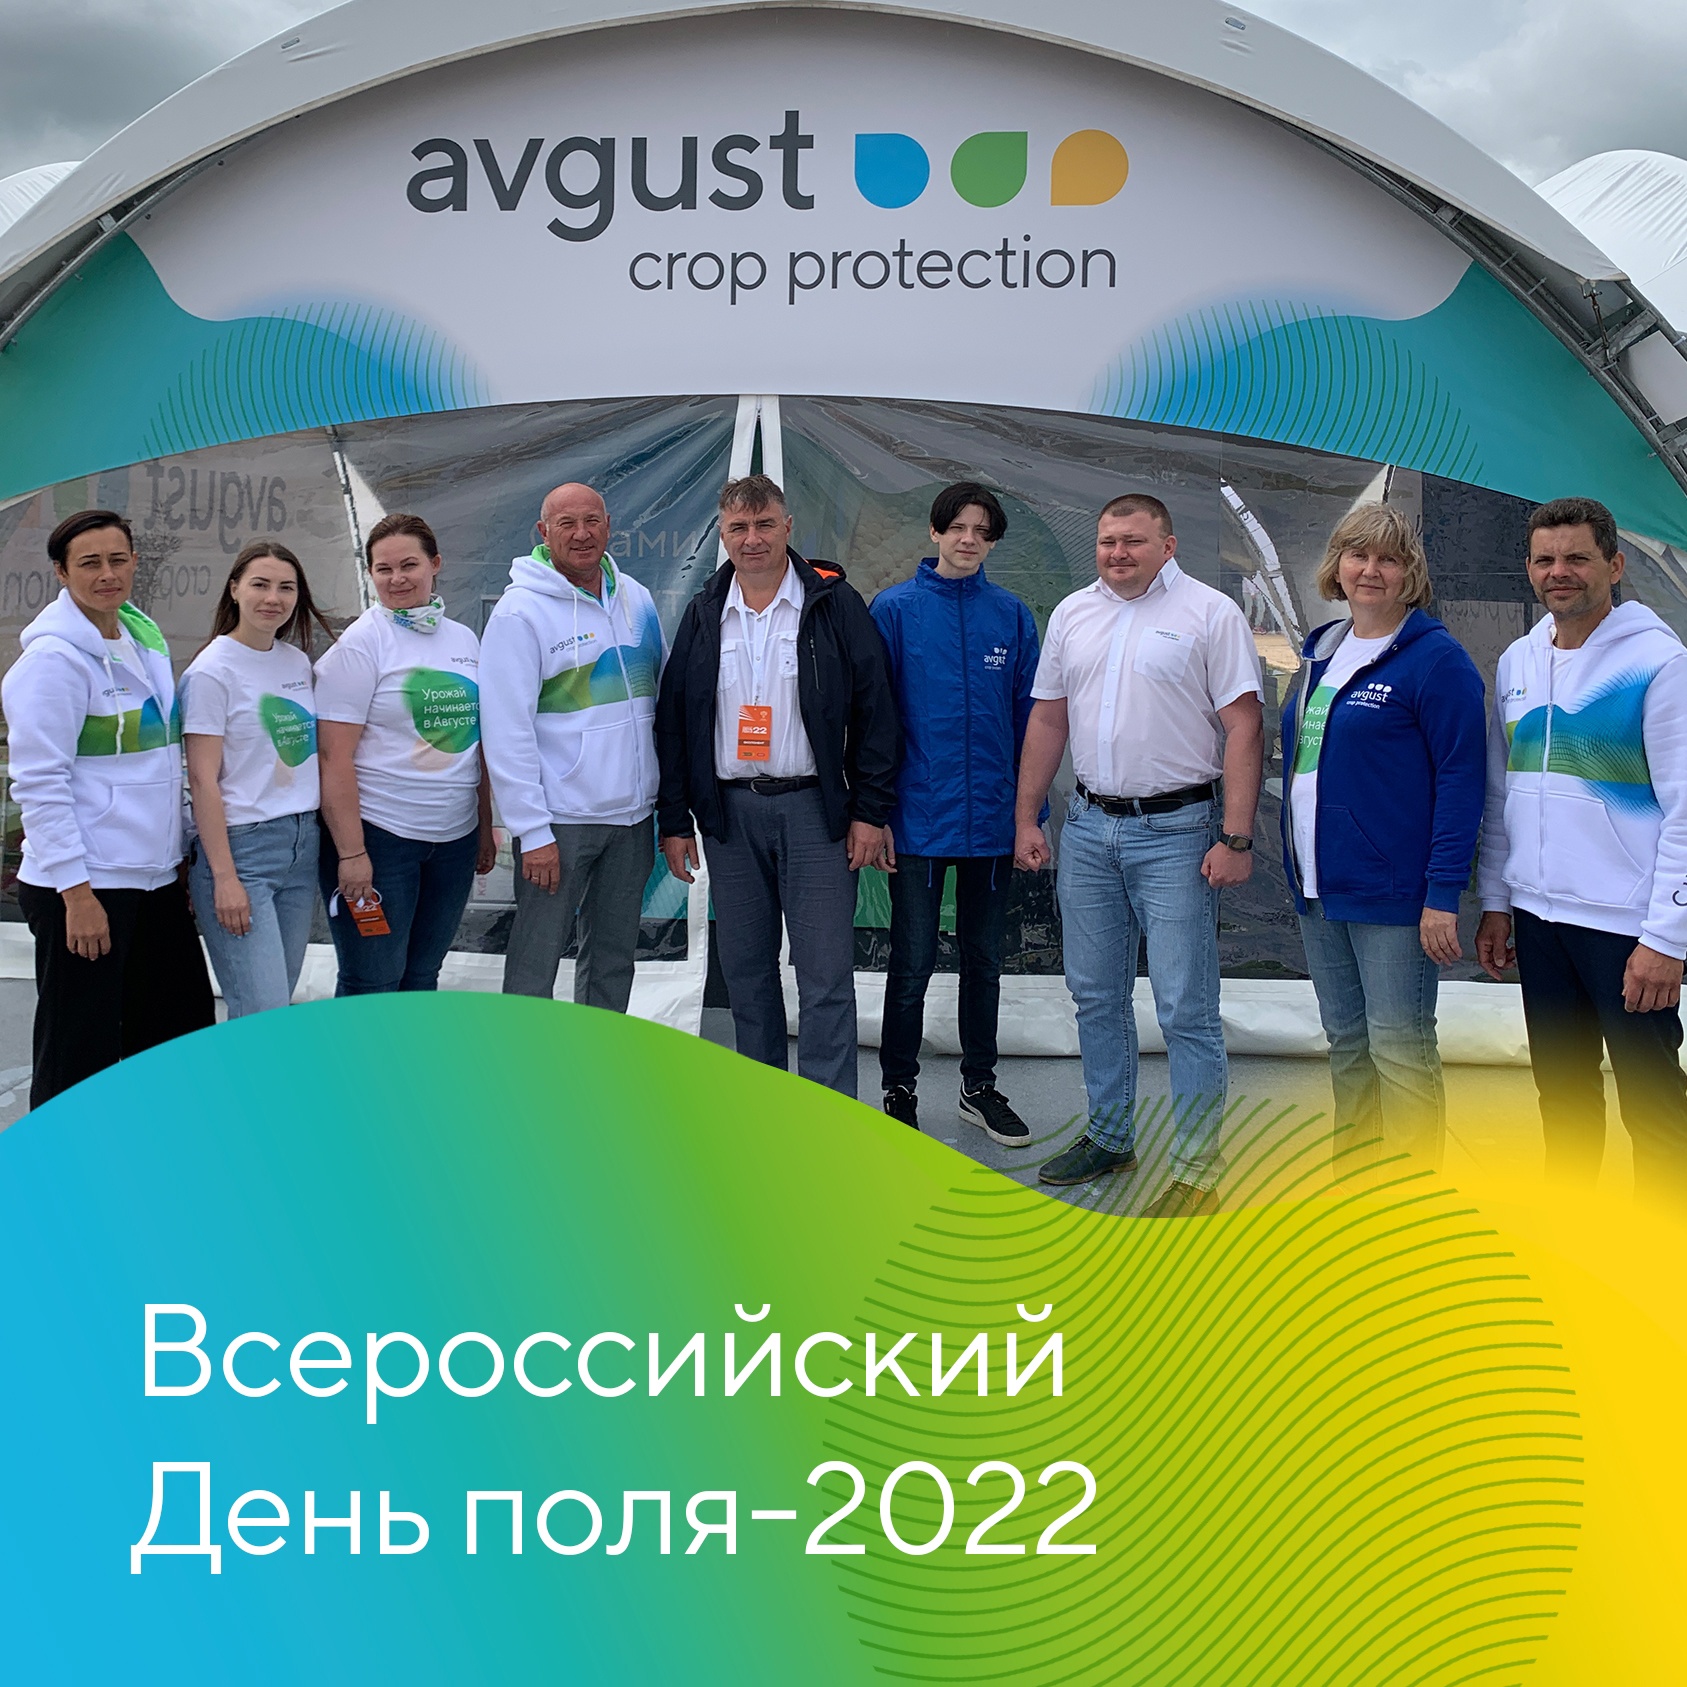 Всероссийский День поля-2022 начал работу! 